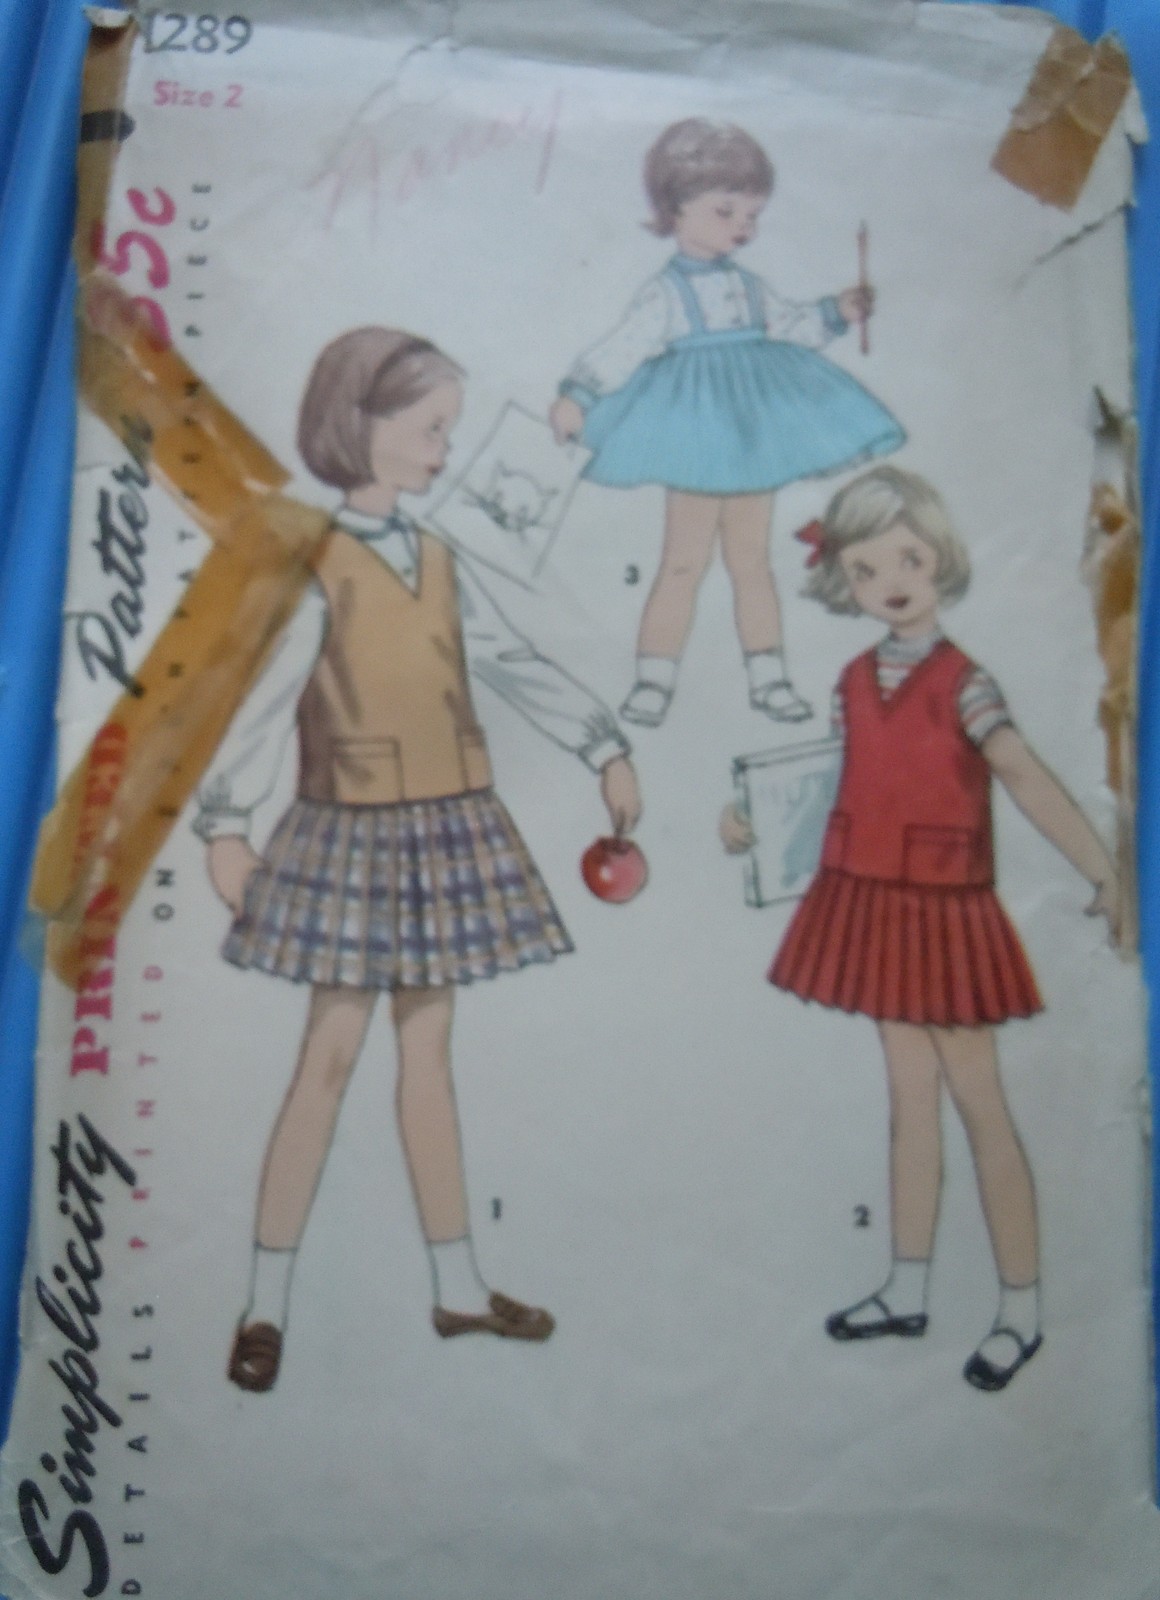 Simplicity Child’s Blouse Skirt & Jerkin Size 2 #1289 Uncut  - $4.99